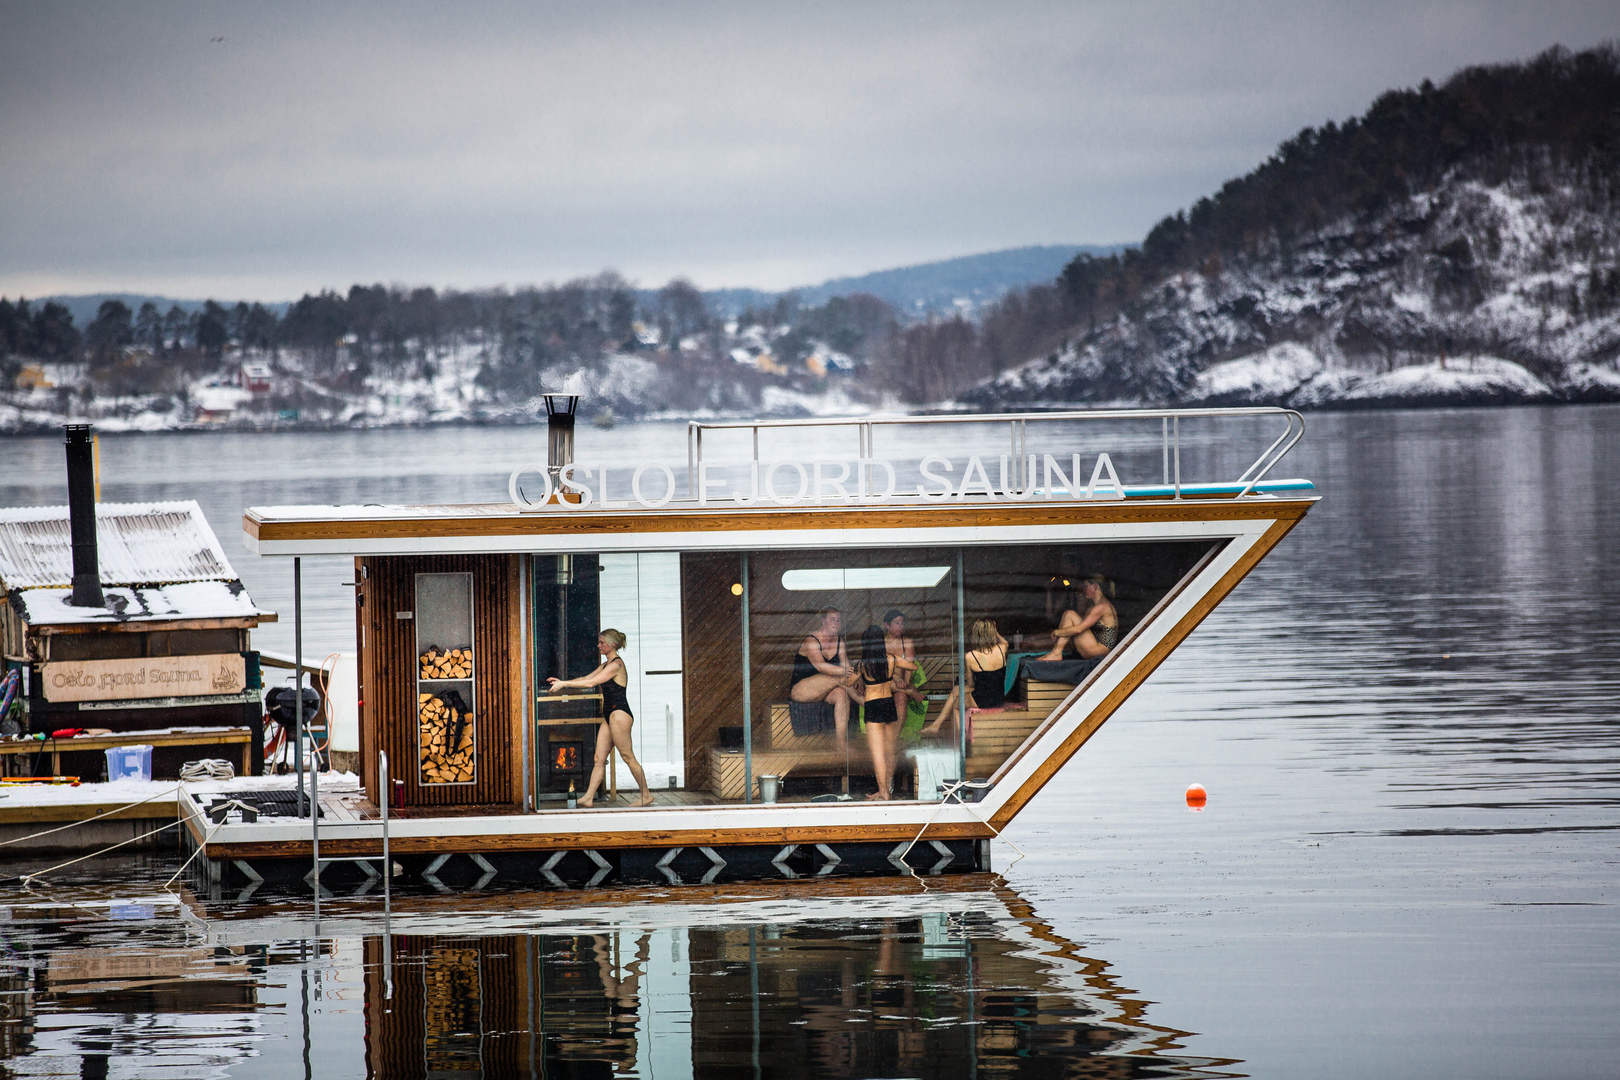 Hier sieht mann, wie frau in Oslo sauniert ;-)